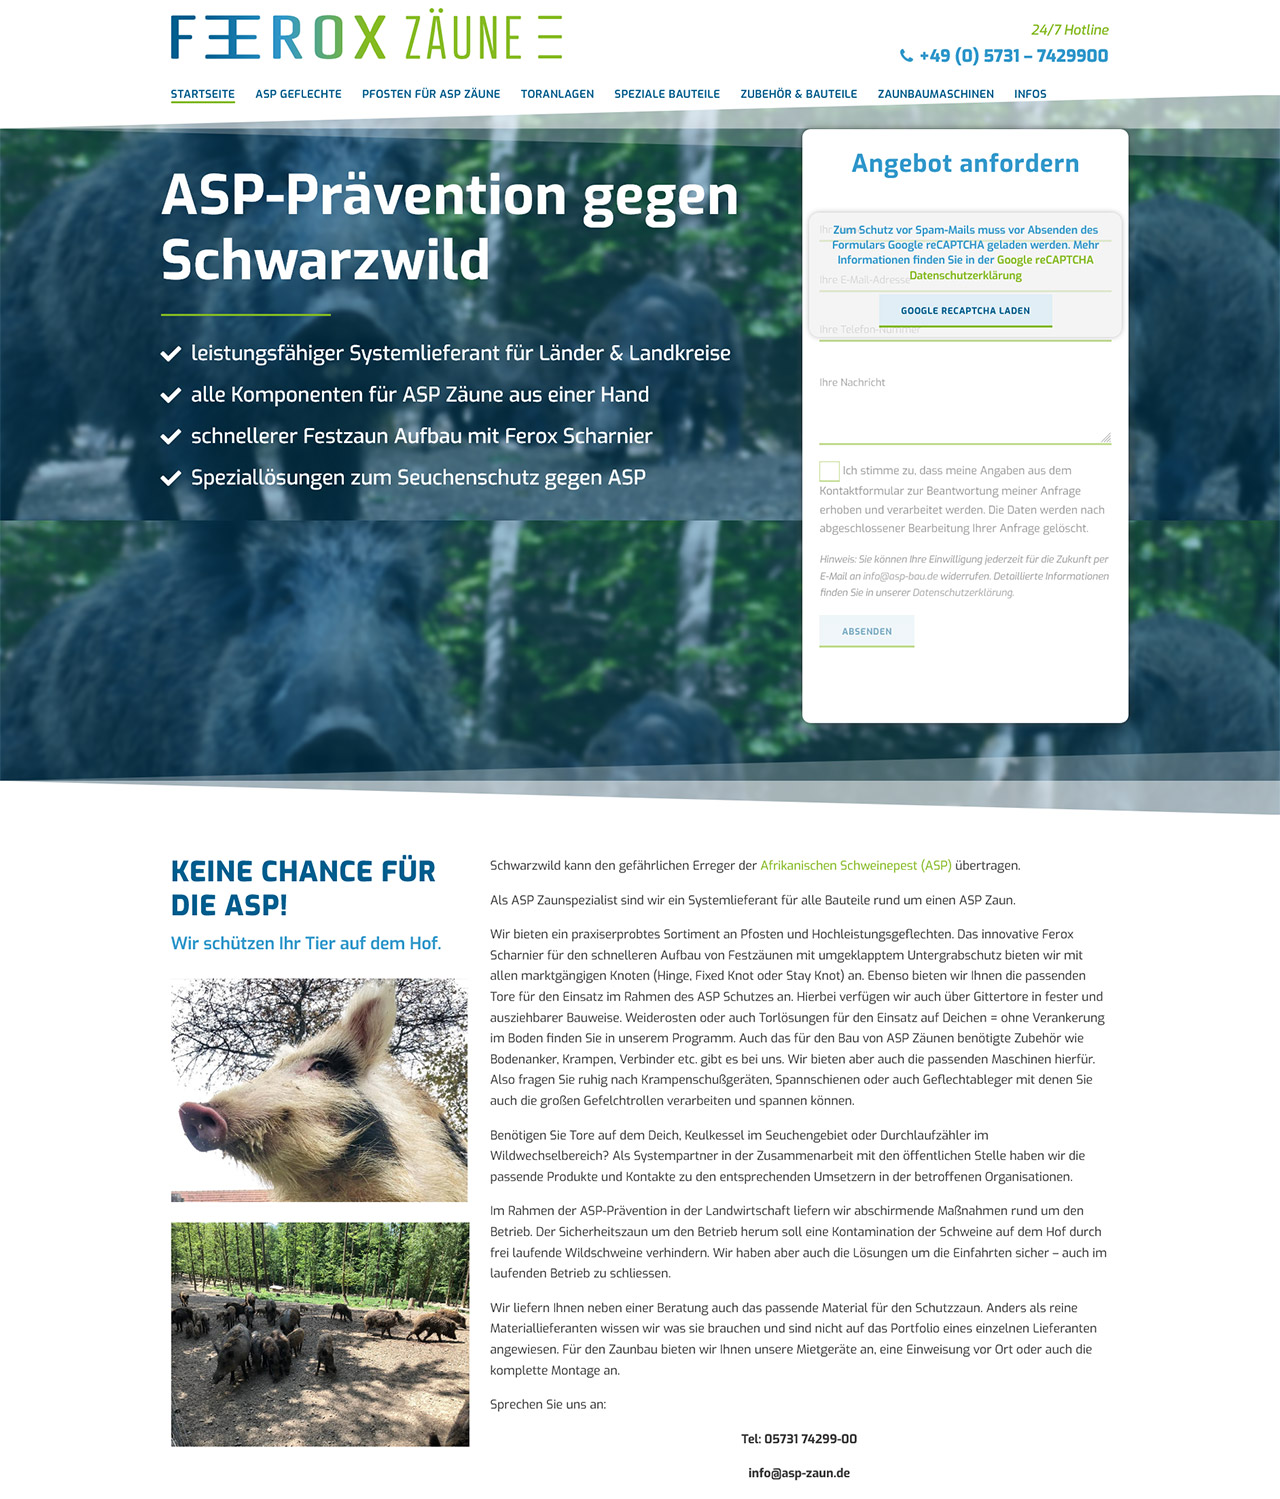 ASP - Der Zaun gegen die Afrikanische Schweinepest